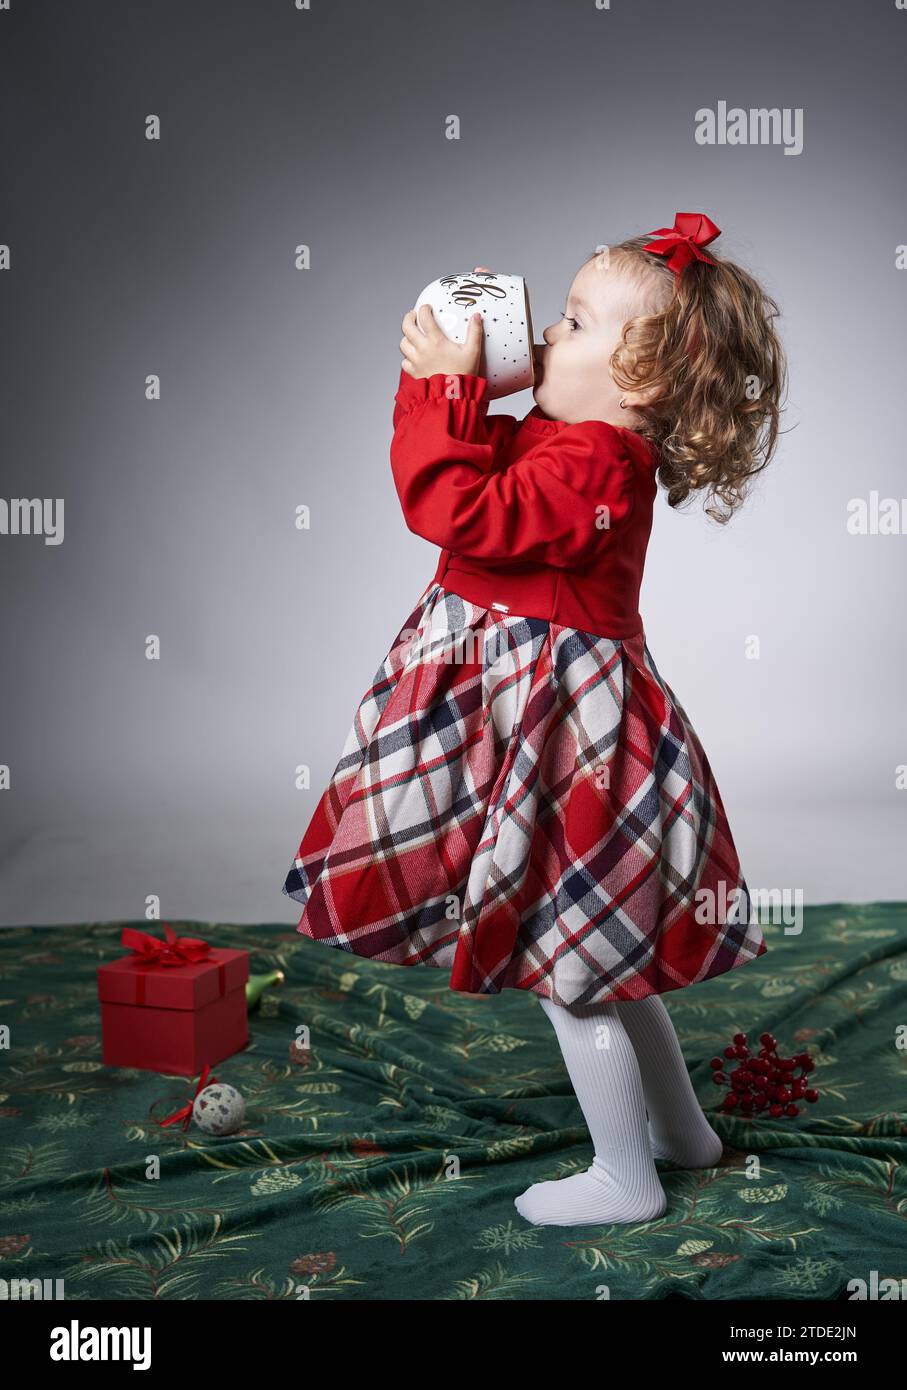 Portrait d'une adorable petite fille blonde aux cheveux bouclés avec une énorme tasse à lait pour Noël, sur fond gris, photo studio Banque D'Images